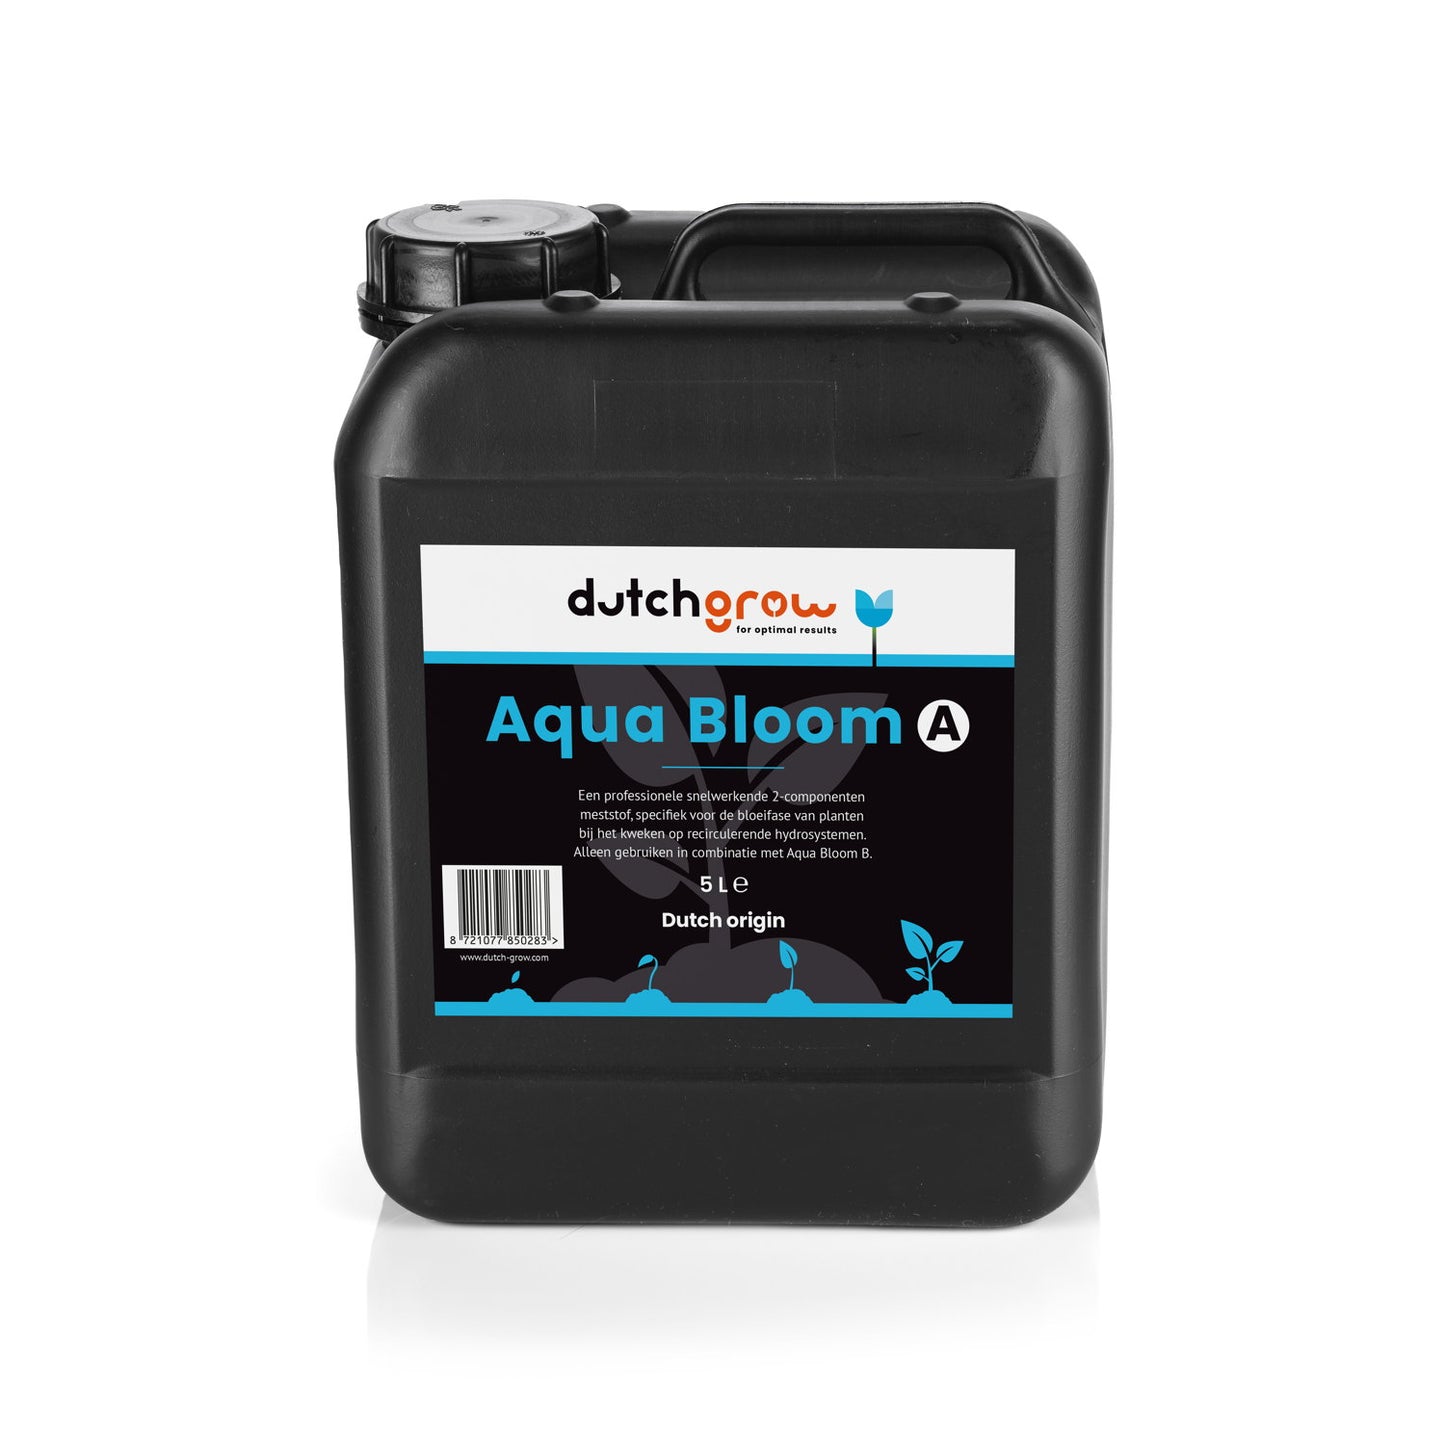 DutchGrow Aqua Bloom A 5 liter